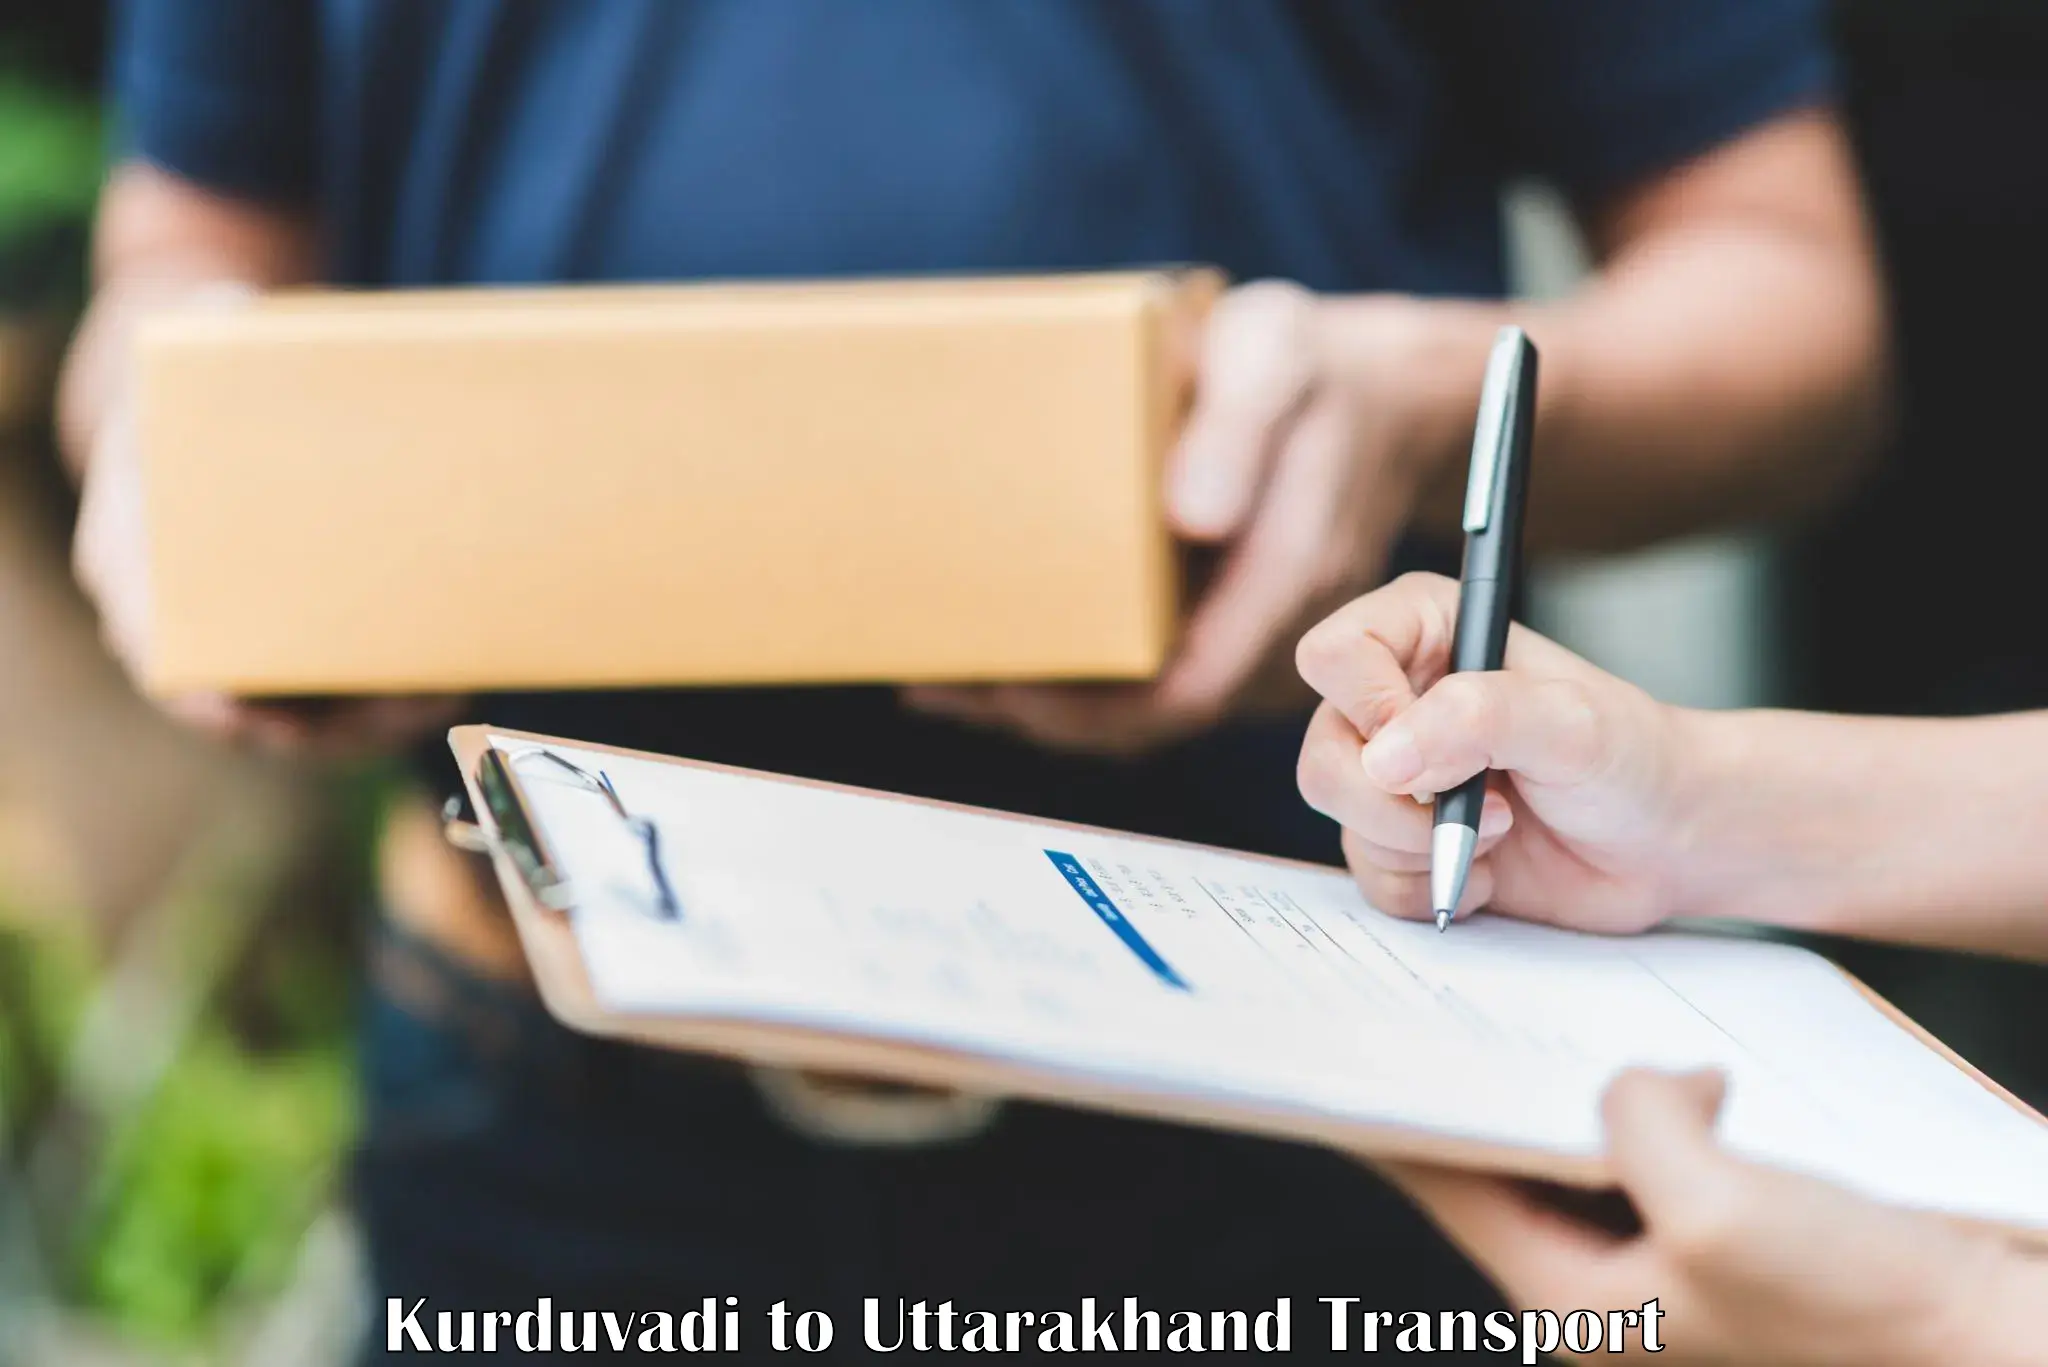 Furniture transport service Kurduvadi to Gairsain